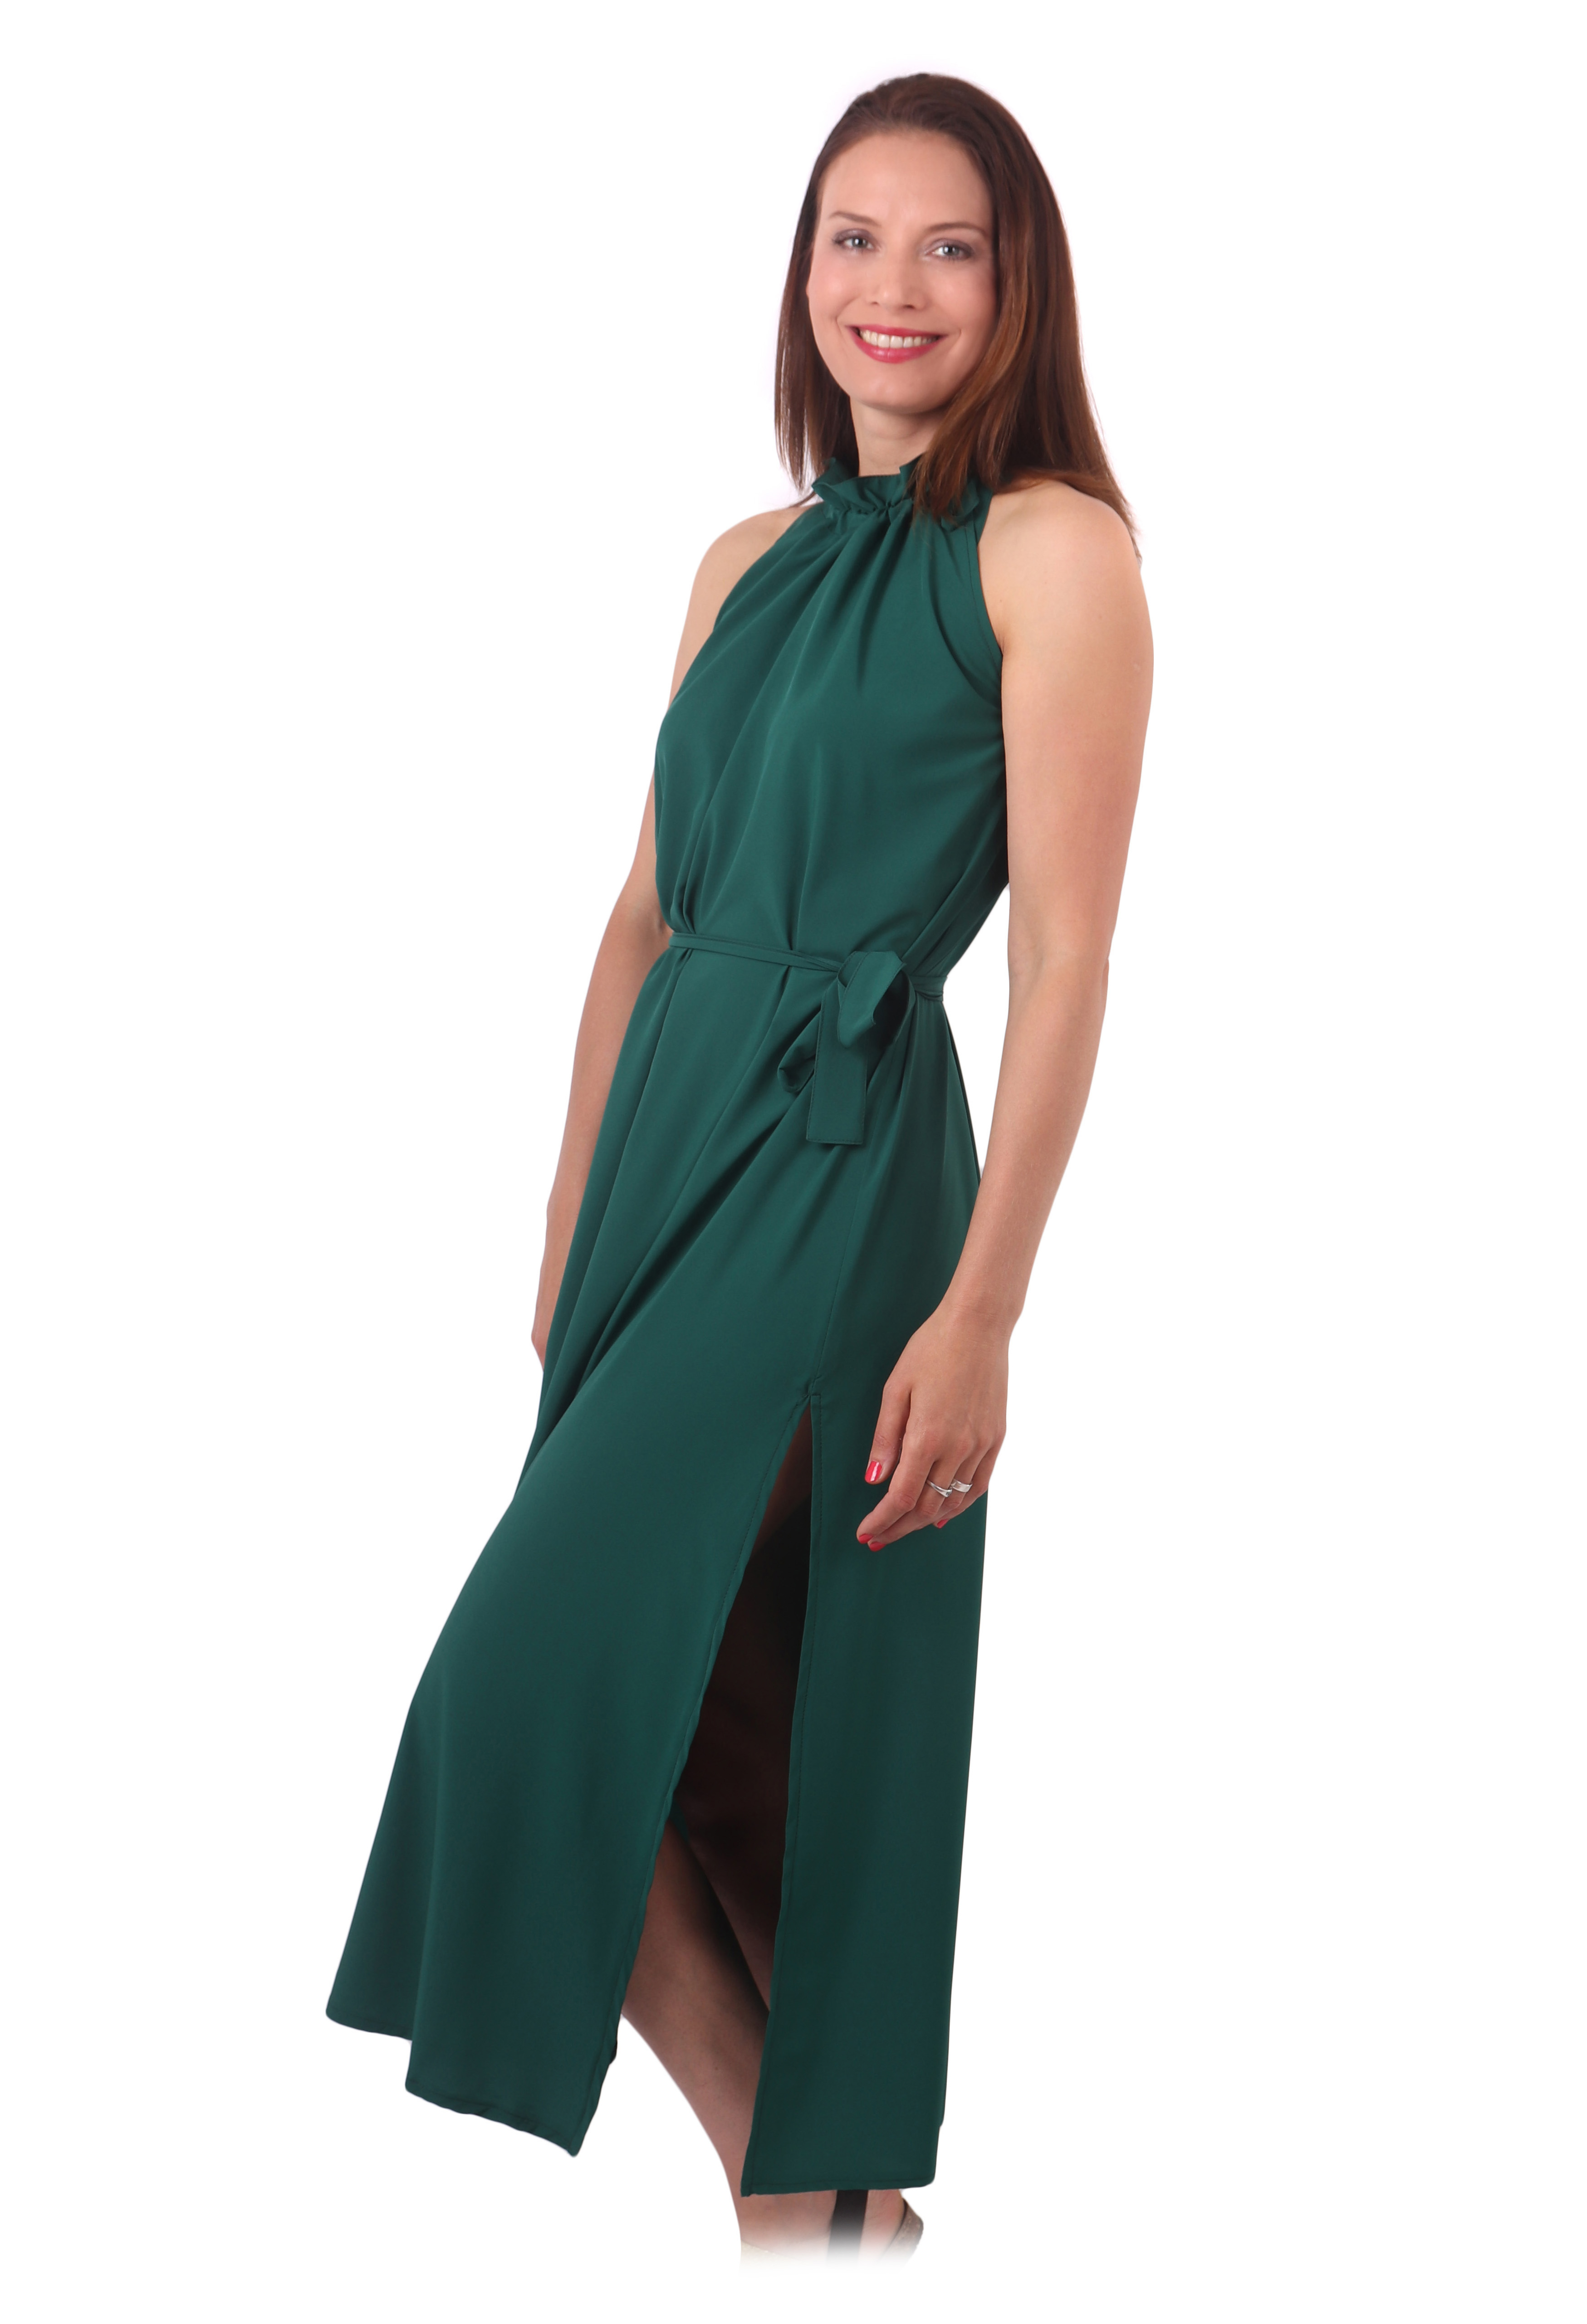 Společenské šaty Heda, dlouhé, smaragdově zelené